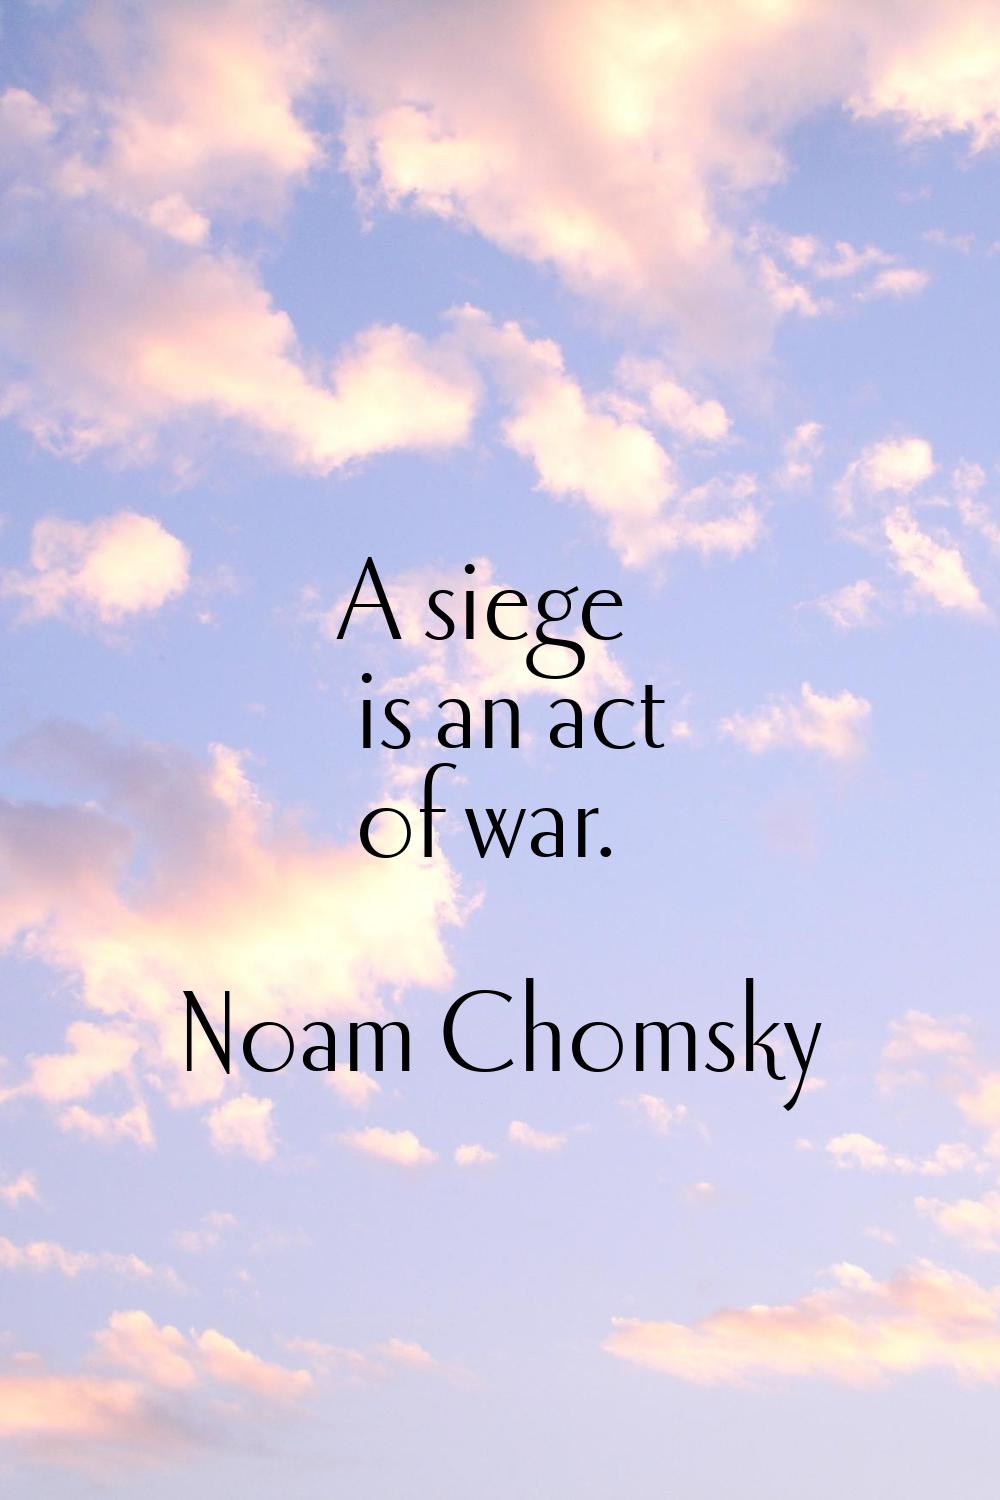 A siege is an act of war.